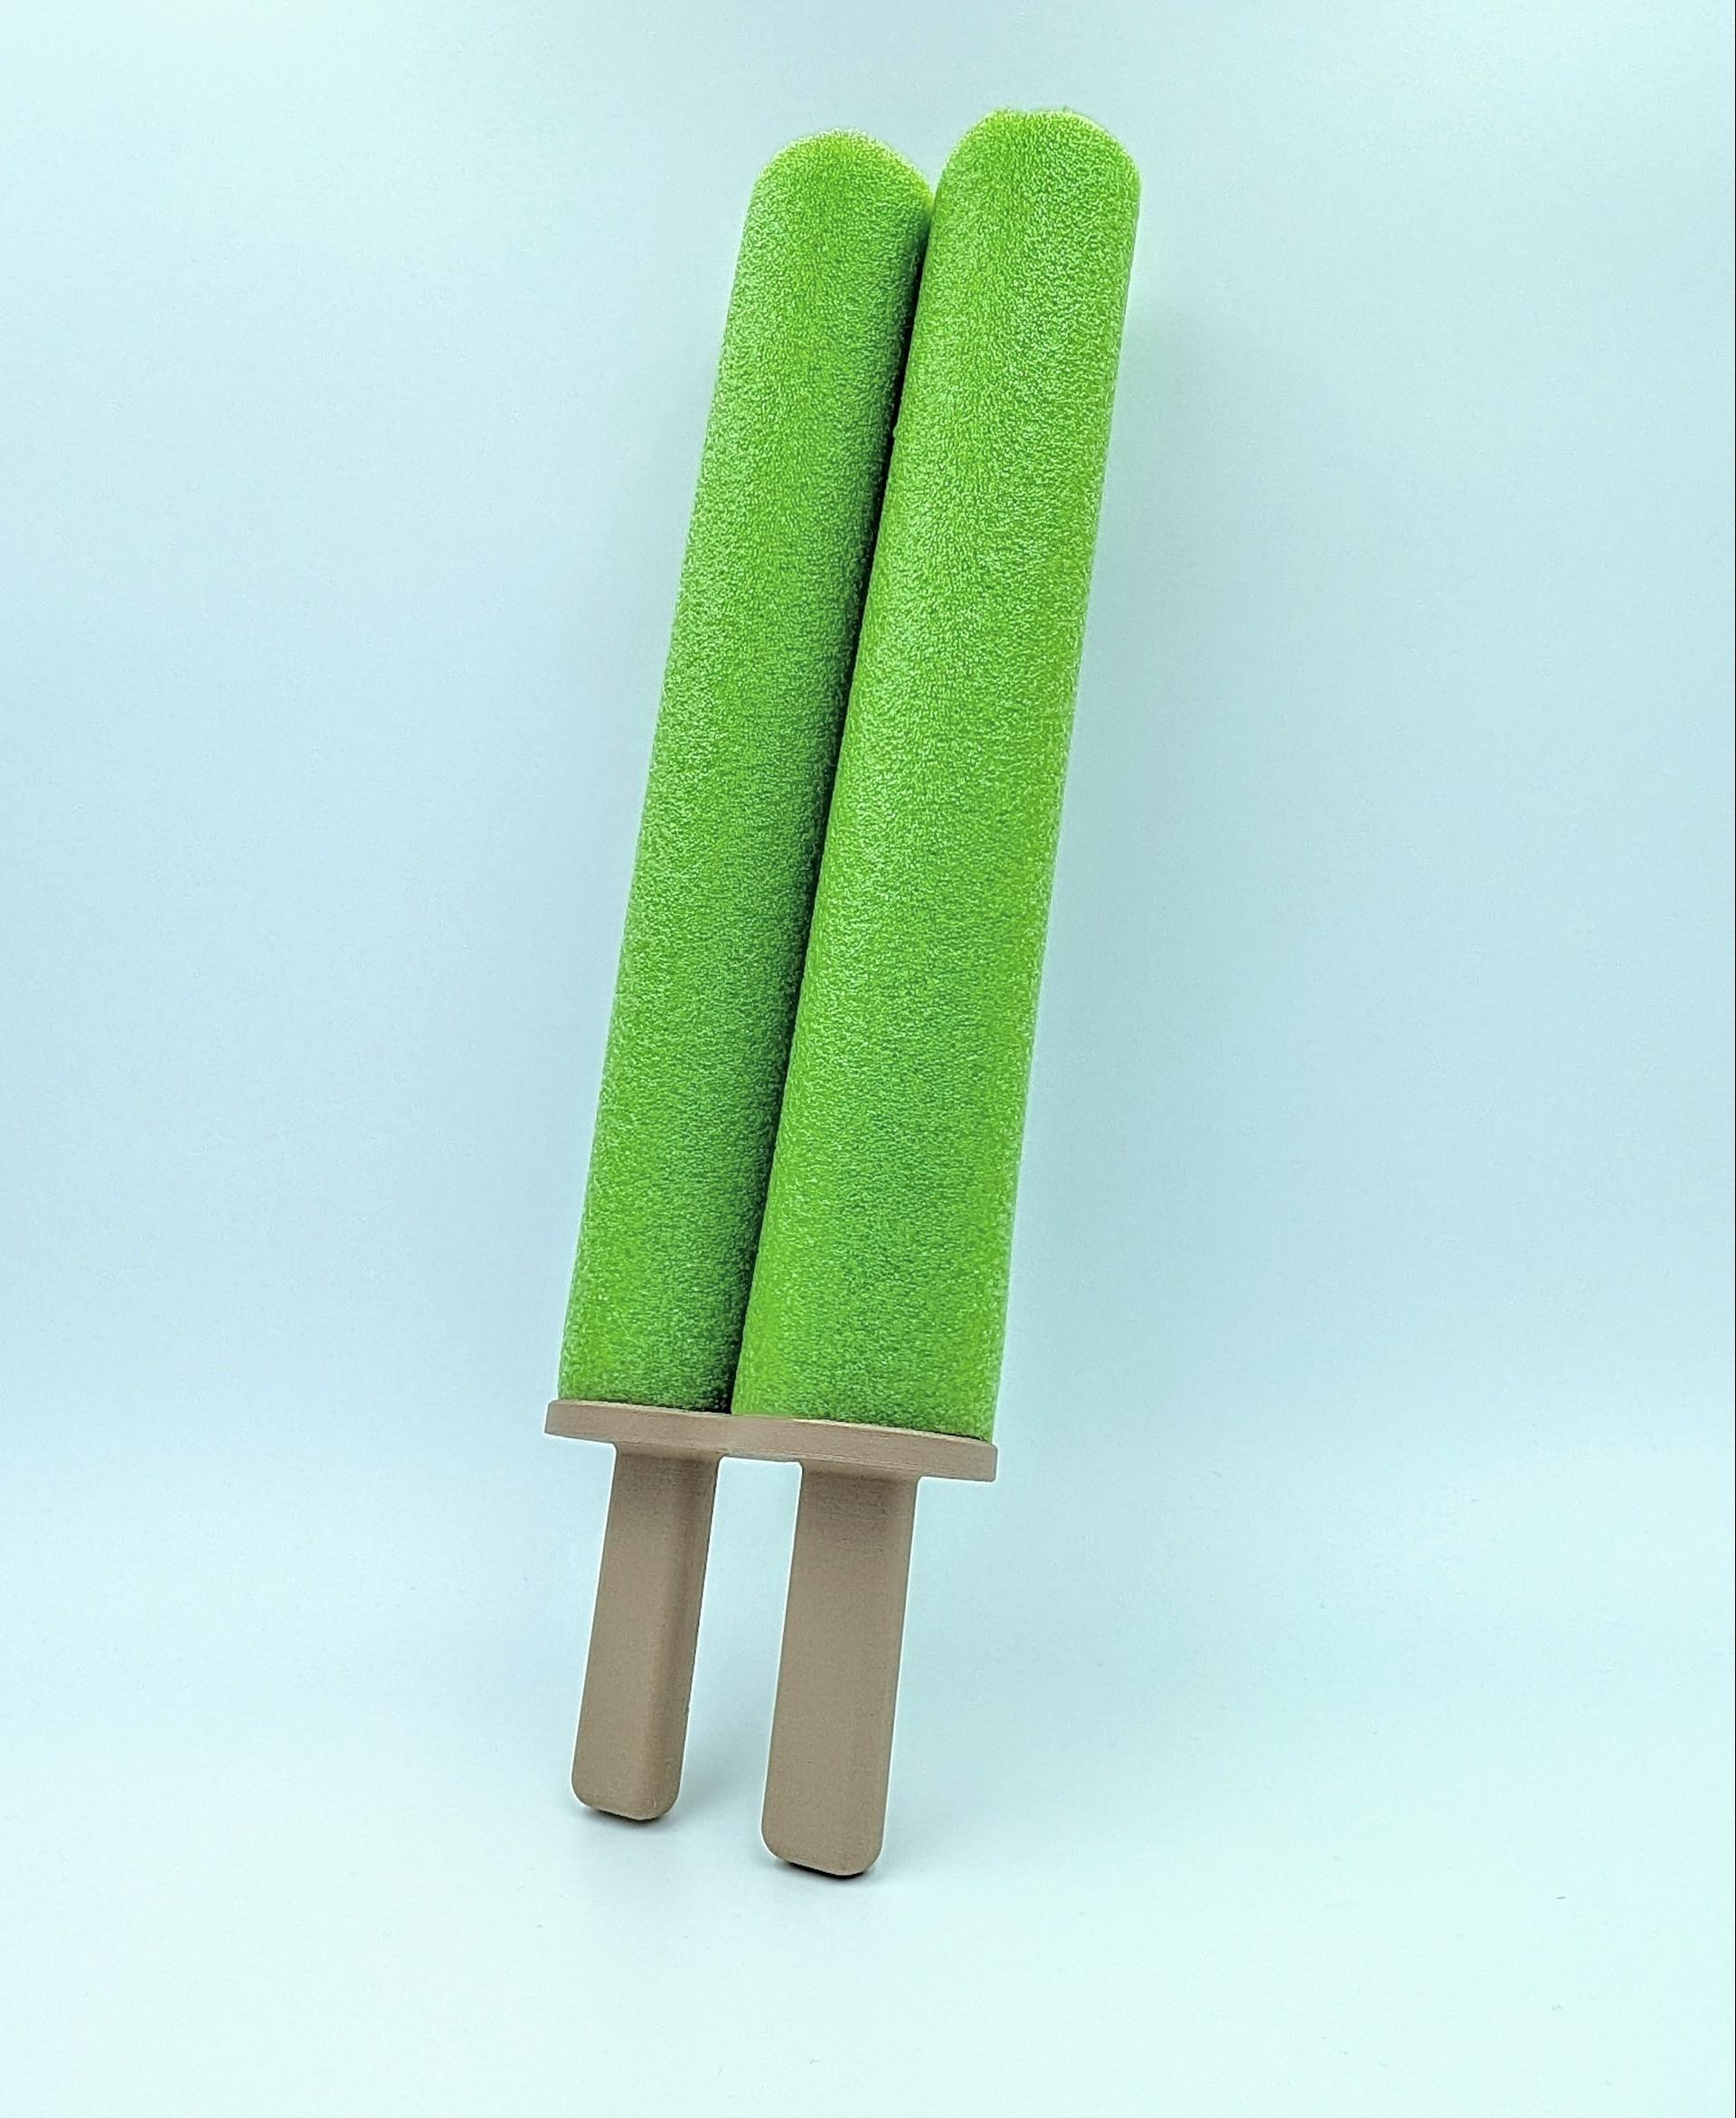 Double Popsicle Pool Noodle Sword  3d model